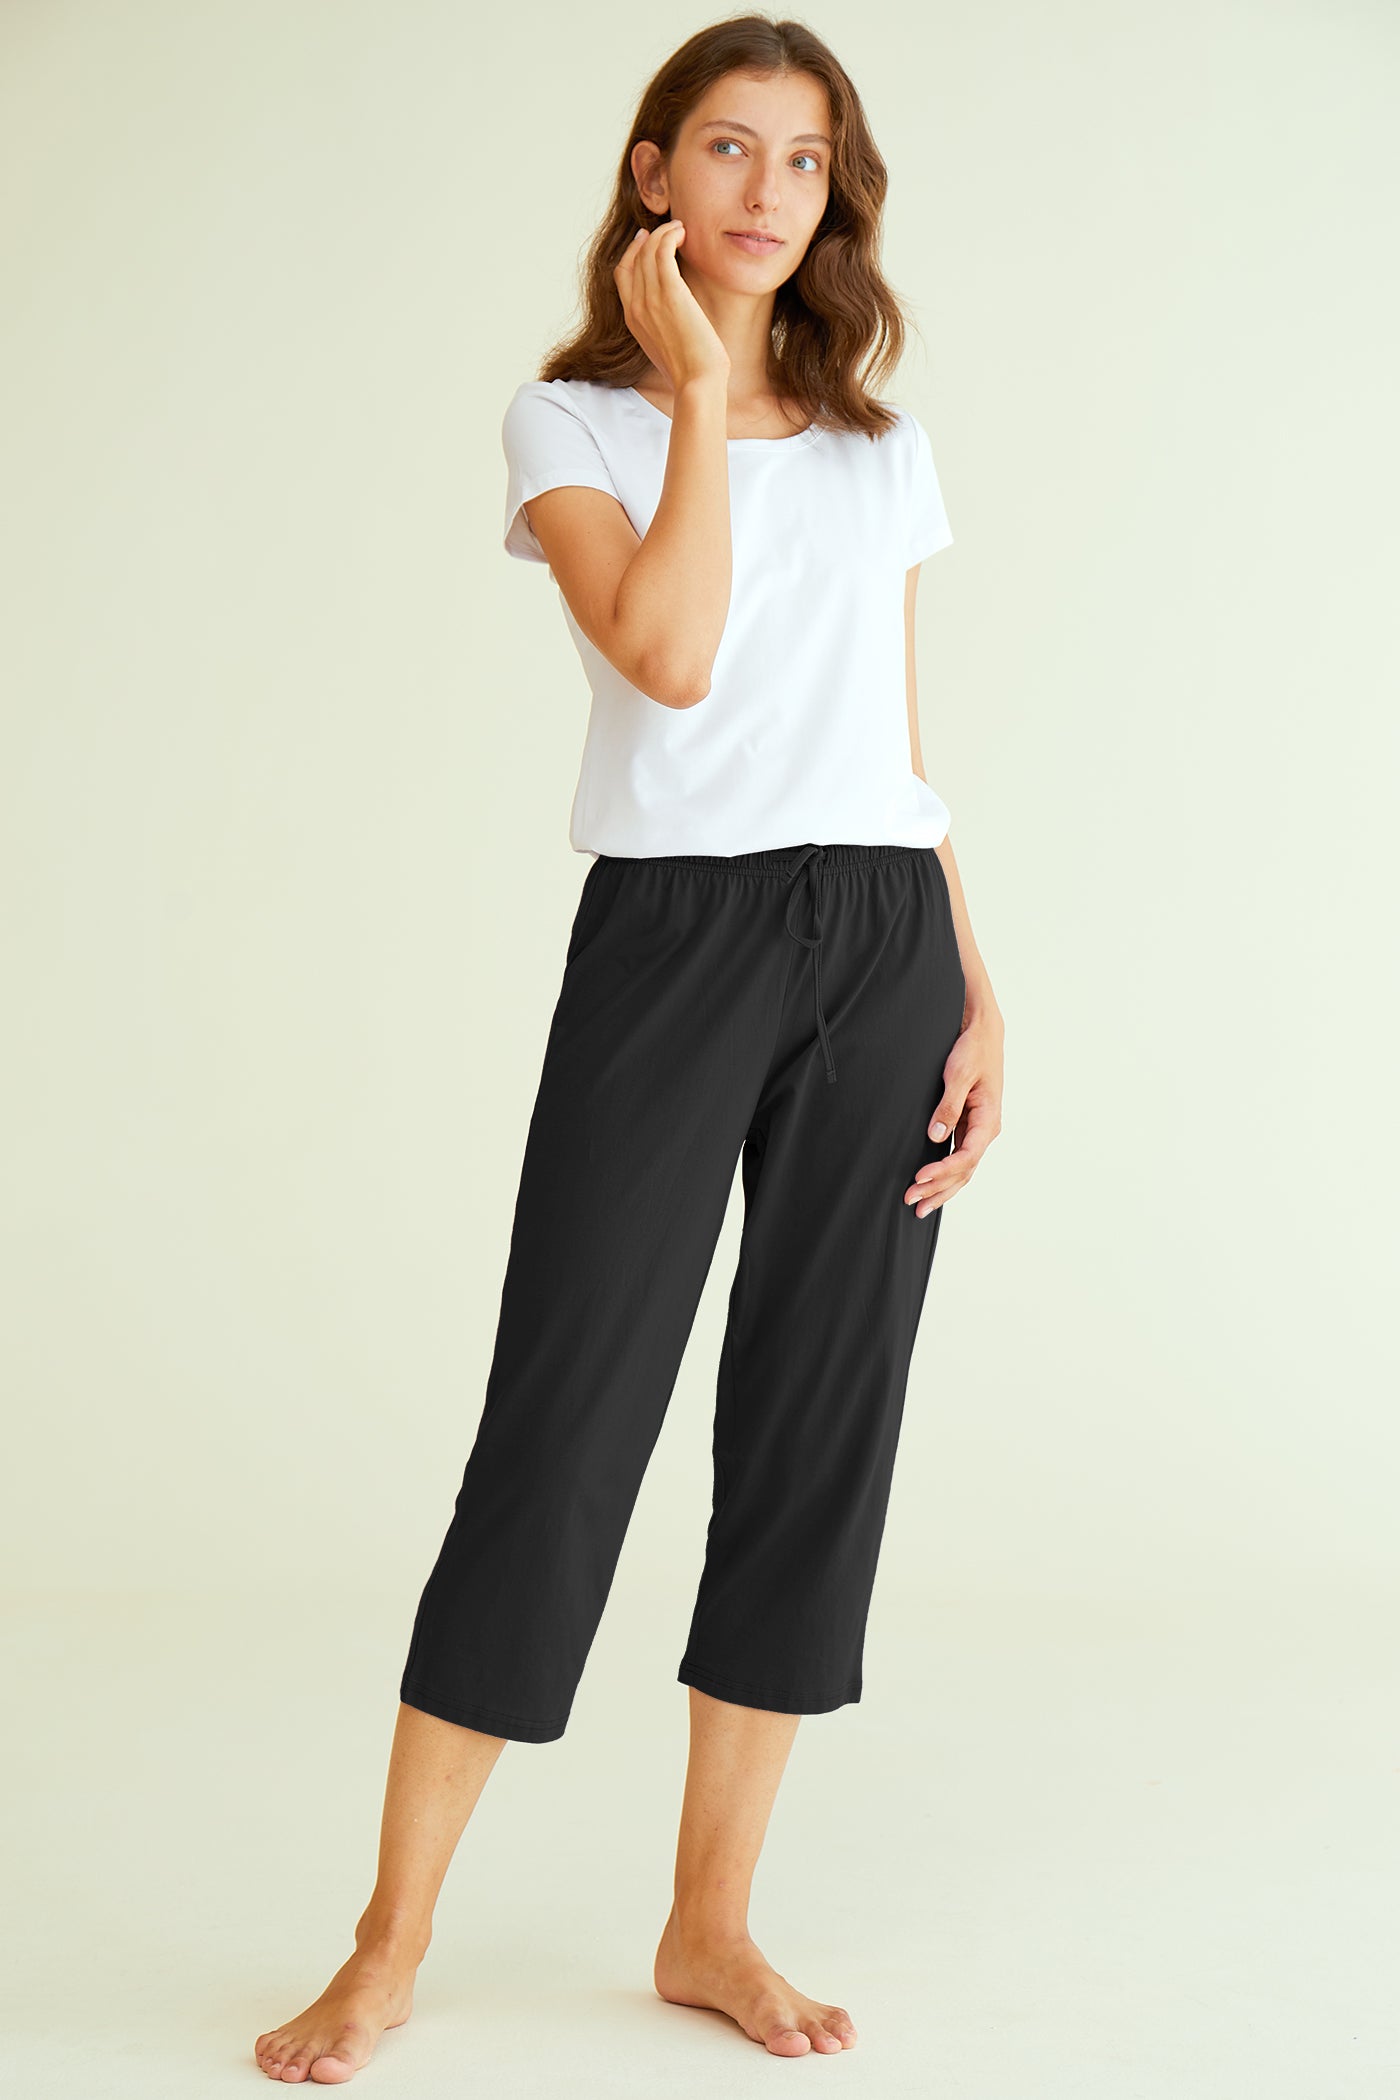 Plus Size Capris For Women - Cotton Capri Pants - Black, Ladies